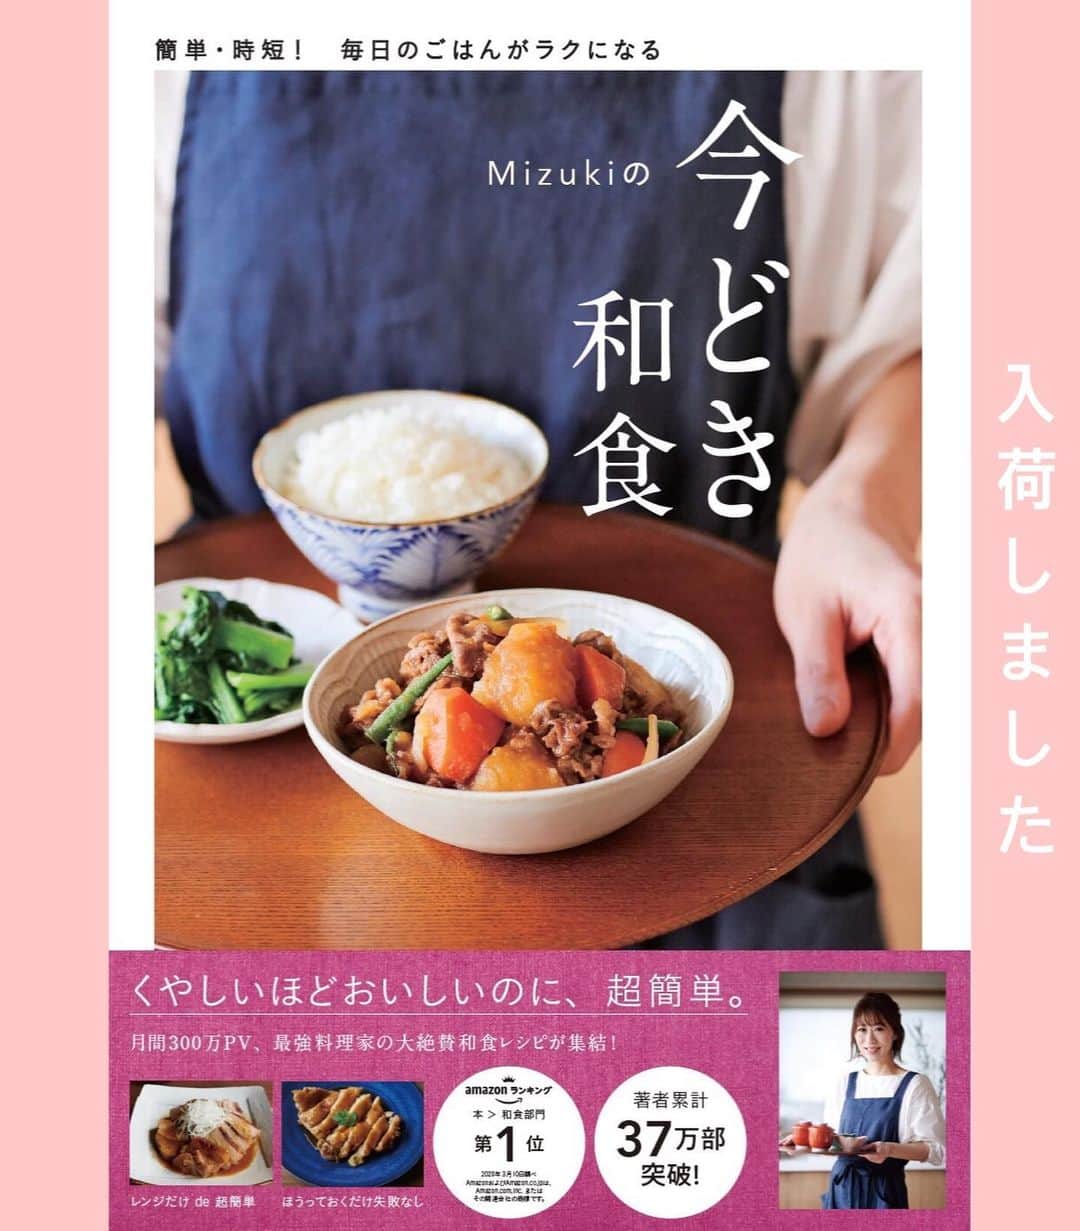 Mizuki【料理ブロガー・簡単レシピ】さんのインスタグラム写真 - (Mizuki【料理ブロガー・簡単レシピ】Instagram)「・﻿ 【レシピ】ーーーーーーーーーーーーーー﻿ ♡おろしだれde皮パリチキンステーキ♡﻿ ーーーーーーーーーーーーーーーーーーー﻿ ﻿ ﻿ おはようございます(*^^*)﻿ ﻿ 今日ご紹介させていただくのは﻿ 皮パリチキンステーキ♡♡﻿ パリっとジューシーなチキンに﻿ さっぱりおろしだれをかけました♩﻿ たれは後がけすることで﻿ 皮のパリパリ感が味わえますよ〜♡﻿ ﻿ メニューを考えるのが億劫な時は﻿ ''とりあえず焼く''が正解！(笑)﻿ とっても簡単にできるので﻿ よかったらお試し下さいね(*´艸`)﻿ ﻿ ﻿ ﻿ ーーーーーーーーーーーーーーーーーーーー﻿ 【2人分】﻿ 鶏もも肉...大1枚(300g)﻿ 塩こしょう...少々﻿ ごま油...小1﻿ 大根...150g﻿ ●醤油・みりん・酢...各大1.5﻿ (あれば)大葉...適量﻿ ﻿ 1.大根はすりおろして軽く水気を切り、●と合わせておく(←おろしだれ)。鶏肉は身の厚い部分を開いて塩こしょうを振る。﻿ 2. フライパンにごま油を入れて中火で熱し、鶏肉を皮目を下にして入れ、フライ返しで押さえながら焼く(ここで7割火を通す)。皮がパリっとこんがり焼けたら裏返し、裏面も焼いて火を通す(裏面は押さえずに)。食べやすい大きさに切って器に盛る。﻿ 3.そのままのフライパンにおろしだれを入れ、一煮立ちさせて鶏肉にかける。仕上げに千切りにした大葉をのせる。﻿ ーーーーーーーーーーーーーーーーーーーー﻿ ﻿ ﻿ ﻿ 《ポイント》﻿ ♦︎フライパンにたくさん油が残っている場合は、軽く拭きとってからおろしだれを加えて下さい♩﻿ ♦︎鶏肉はしっかり焼き色がつくまでフライ返しで押さえながら焼いて下さいね♩﻿ ﻿ ﻿ ﻿ ﻿ ﻿ ﻿ ﻿ 🔻入荷しました🔻﻿ ストーリーにリンク貼っています🙇‍♀️﻿ ＿＿＿＿＿＿＿＿＿＿＿＿＿＿＿＿＿＿＿﻿ 📕\ \ 新刊発売中 / /📕﻿ 簡単・時短！ 毎日のごはんがラクになる﻿ ✨🦋 【 #Mizukiの今どき和食 】🦋✨﻿ ＿＿＿＿＿＿＿＿＿＿＿＿＿＿＿＿＿＿＿﻿ ﻿ なるべく少ない材料で﻿ 手間も時間も省きながら﻿ 簡単にできるおいしい和食レシピ♩﻿ 簡単に失敗なくマスターできる一冊で﻿ もっと気軽に、カジュアルに﻿ 和食を楽しんで下さいね(*^^*)﻿ ﻿ ﻿ ーーー ⭐️PART.1 メインおかず ⭐️ーーー﻿ 素材別にレシピをご紹介しています♩﻿ 和食の定番から新定番まで﻿ どれも押さえておきたいメニューばかり。﻿ 肉じゃがはフライパンで！焼き豚はレンジで！﻿ ぶり大根は切り身を使って手軽に作ります♩﻿ ﻿ ーーー ☘️PART.2 サブおかず ☘️ーーー﻿ 年中手に入るお手頃野菜と﻿ 乾物や大豆、こんにゃくなどを使った﻿ 副菜レシピをたっぷり掲載！！﻿ 普段SNSではメインおかずばかりなので﻿ 本では副菜にも力を入れています(*^^*)﻿ ﻿ ーーー 🌸PART.3 ごはんと汁物 🌸ーーー﻿ ささっと作れる丼と麺、﻿ みんなで食べたいいなり寿司や﻿ 手巻きごはんもご紹介！﻿ 複数の炊き込みごはんと﻿ 味噌汁&和風スープも盛りだくさん！﻿ ﻿ ﻿ 各レシピのポイントは﻿ 【写真付きで丁寧に解説】﻿ 副菜レシピもたっぷりなので﻿ 【メインページに副菜メモもつけました】﻿ ＊このメインにはこの副菜が合いますよ〜﻿ という献立の提案です(*^^*)﻿ 【その他コラムも充実】﻿ 全127品中ほぼ全て﻿ 【本だけのレシピです！】﻿ ＿＿＿＿＿＿＿＿＿＿＿＿＿＿＿＿＿＿＿﻿ ﻿ ﻿ ﻿ ﻿ ﻿ ＿＿＿＿＿＿＿＿＿＿＿＿＿＿＿＿＿﻿ 🎀発売中🎀﻿ 【#ホットケーキミックスのお菓子 】﻿ ﻿ 一冊まるっとホケミスイーツ♩﻿ 普段のおやつから﻿ 特別な日にも使えるレシピを﻿ この一冊に詰め込みました(*^^*)﻿ ホットケーキミックスを使えば﻿ 簡単に本格的なお菓子が作れますよ♡﻿ ＿＿＿＿＿＿＿＿＿＿＿＿＿＿＿＿＿﻿ ﻿ ⭐️ストーリー、ハイライト、プロフ画面に﻿ 本のURLを貼らせていただいております♩﻿ →(@mizuki_31cafe )﻿ ﻿ ﻿ ﻿ ﻿ ﻿ #皮パリチキン#鶏肉#おろし#大根#さっぱり#うちで過ごそう#おうち時間#Mizuki#簡単レシピ#時短レシピ#節約レシピ#料理#レシピ#フーディーテーブル#マカロニメイト#おうちごはん#おうちカフェ#デリスタグラマー#料理好きな人と繋がりたい#おうちごはんlover#foodpic#follow#cooking#recipe#lin_stagrammer#stayhome#おろしだれで皮パリチキンステーキm」5月20日 7時07分 - mizuki_31cafe